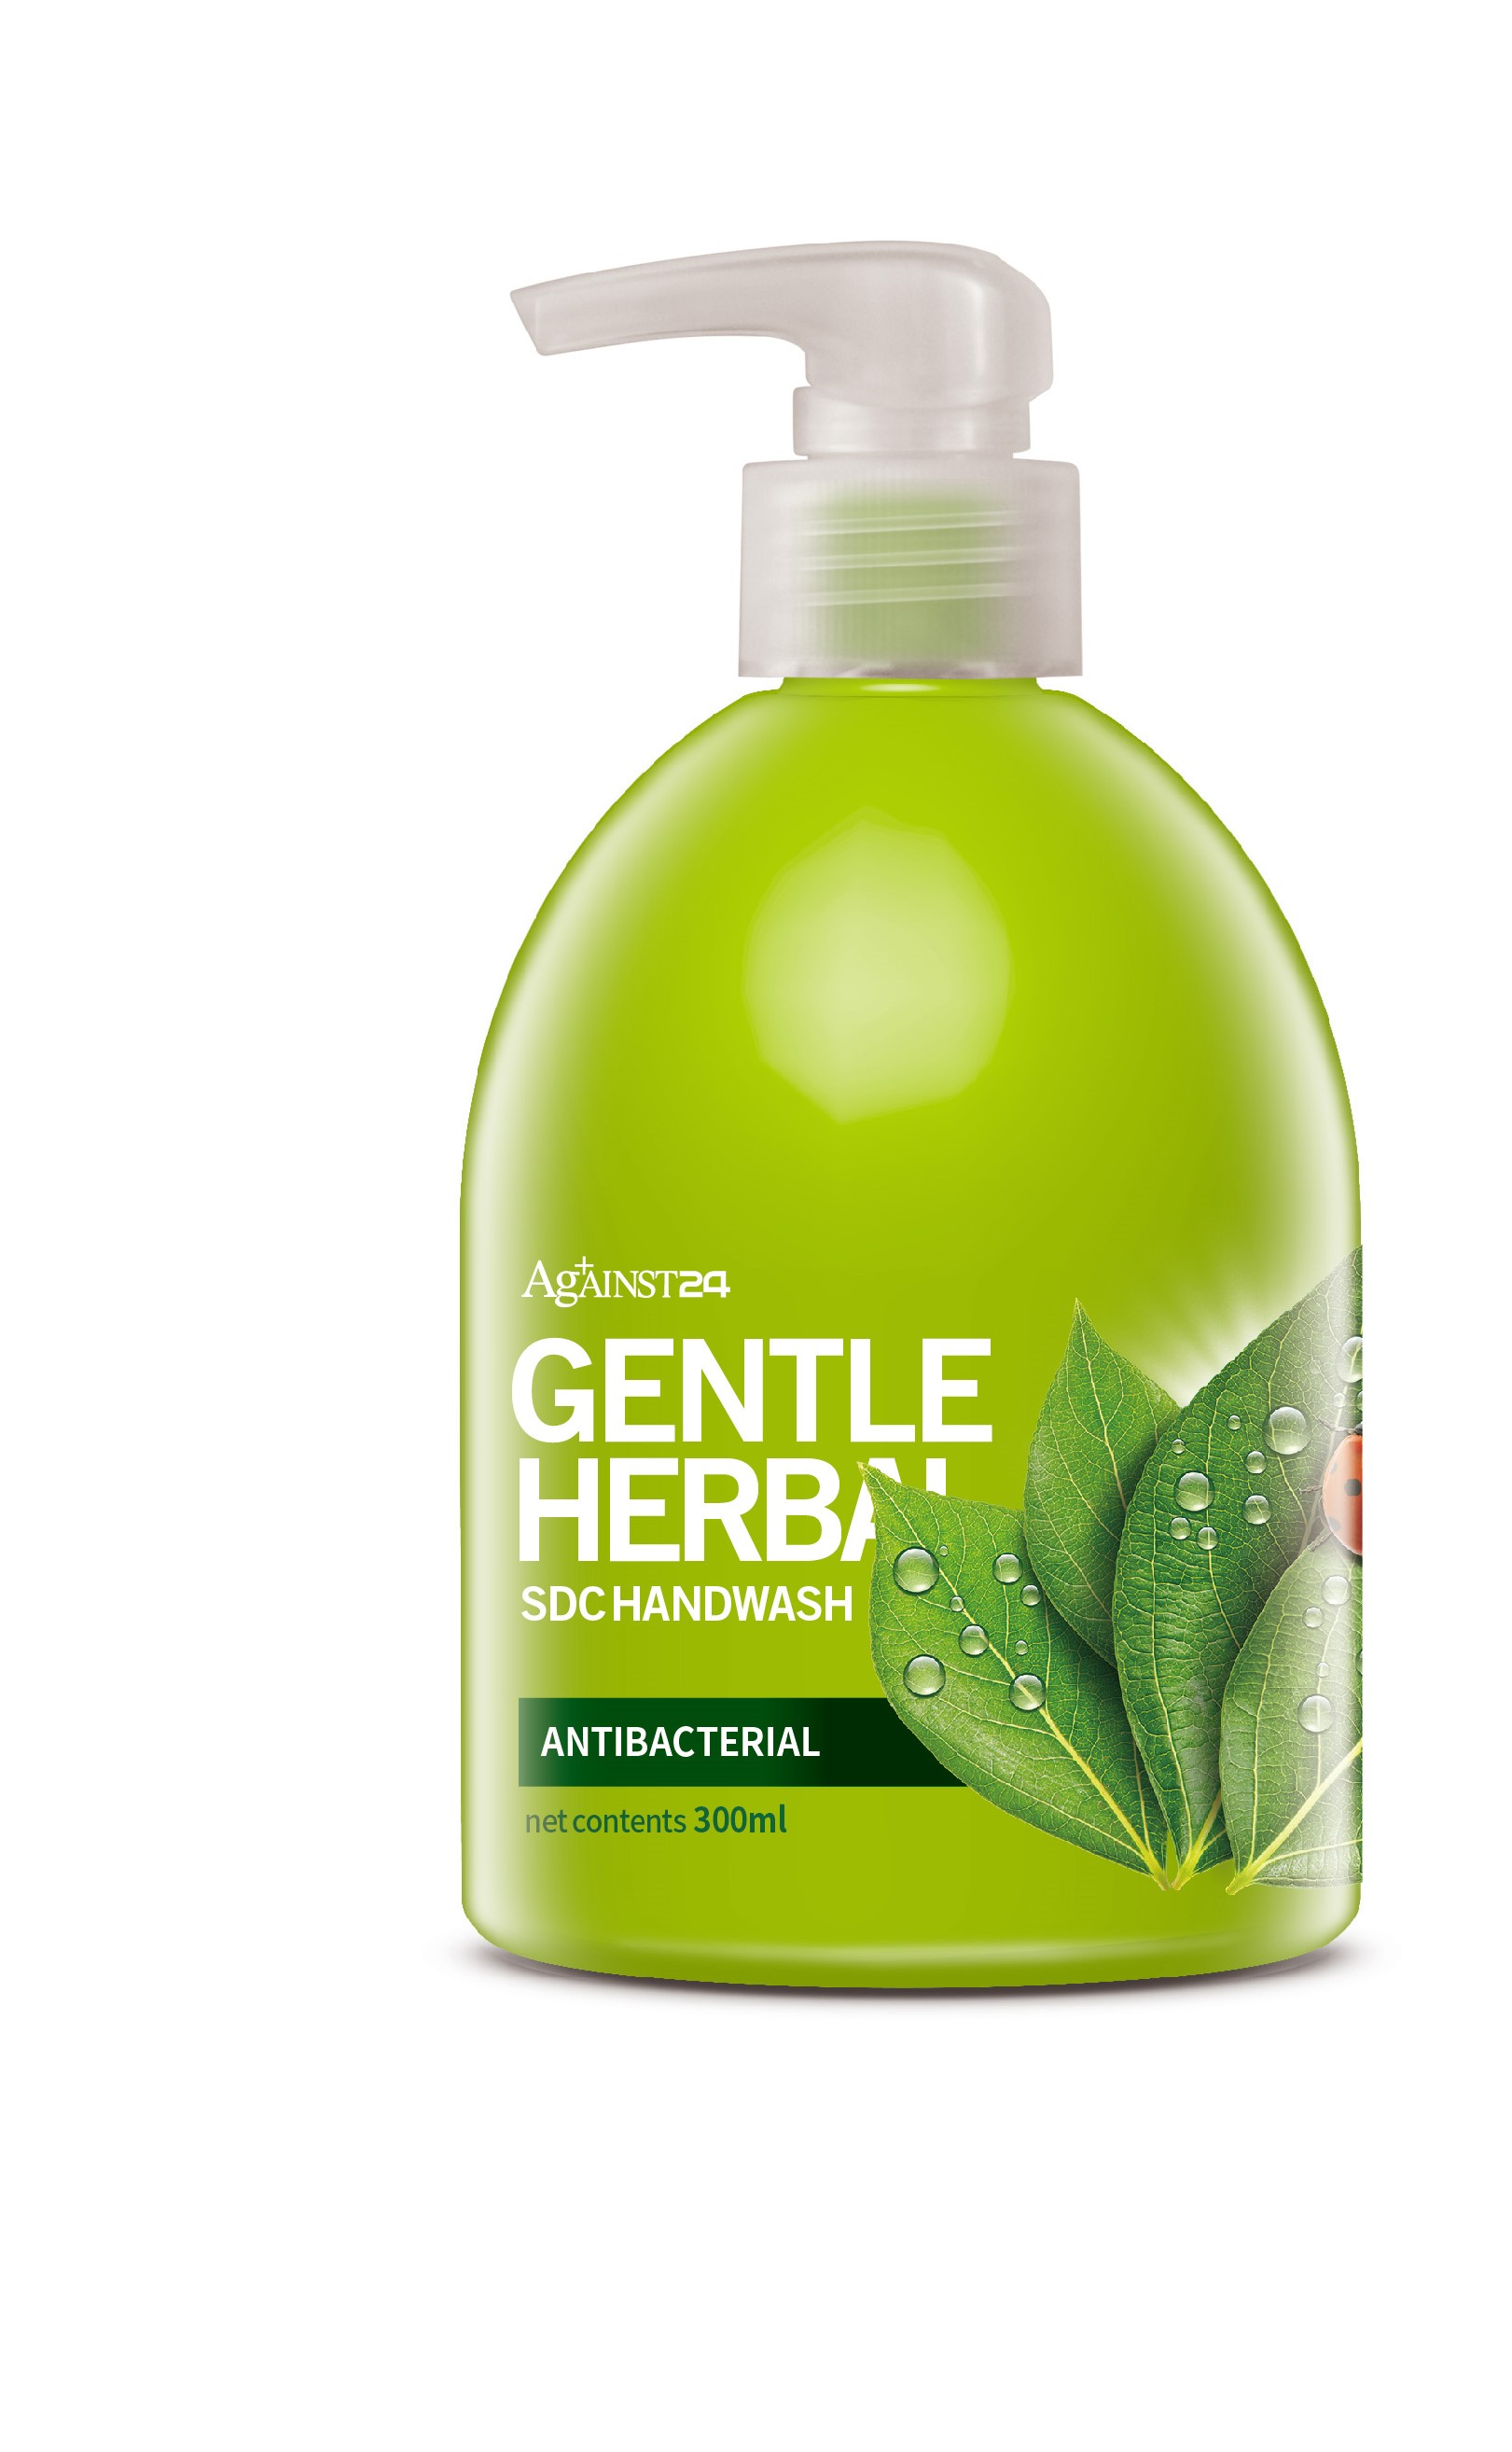 Against24 Gentle Herbal Hand Wash